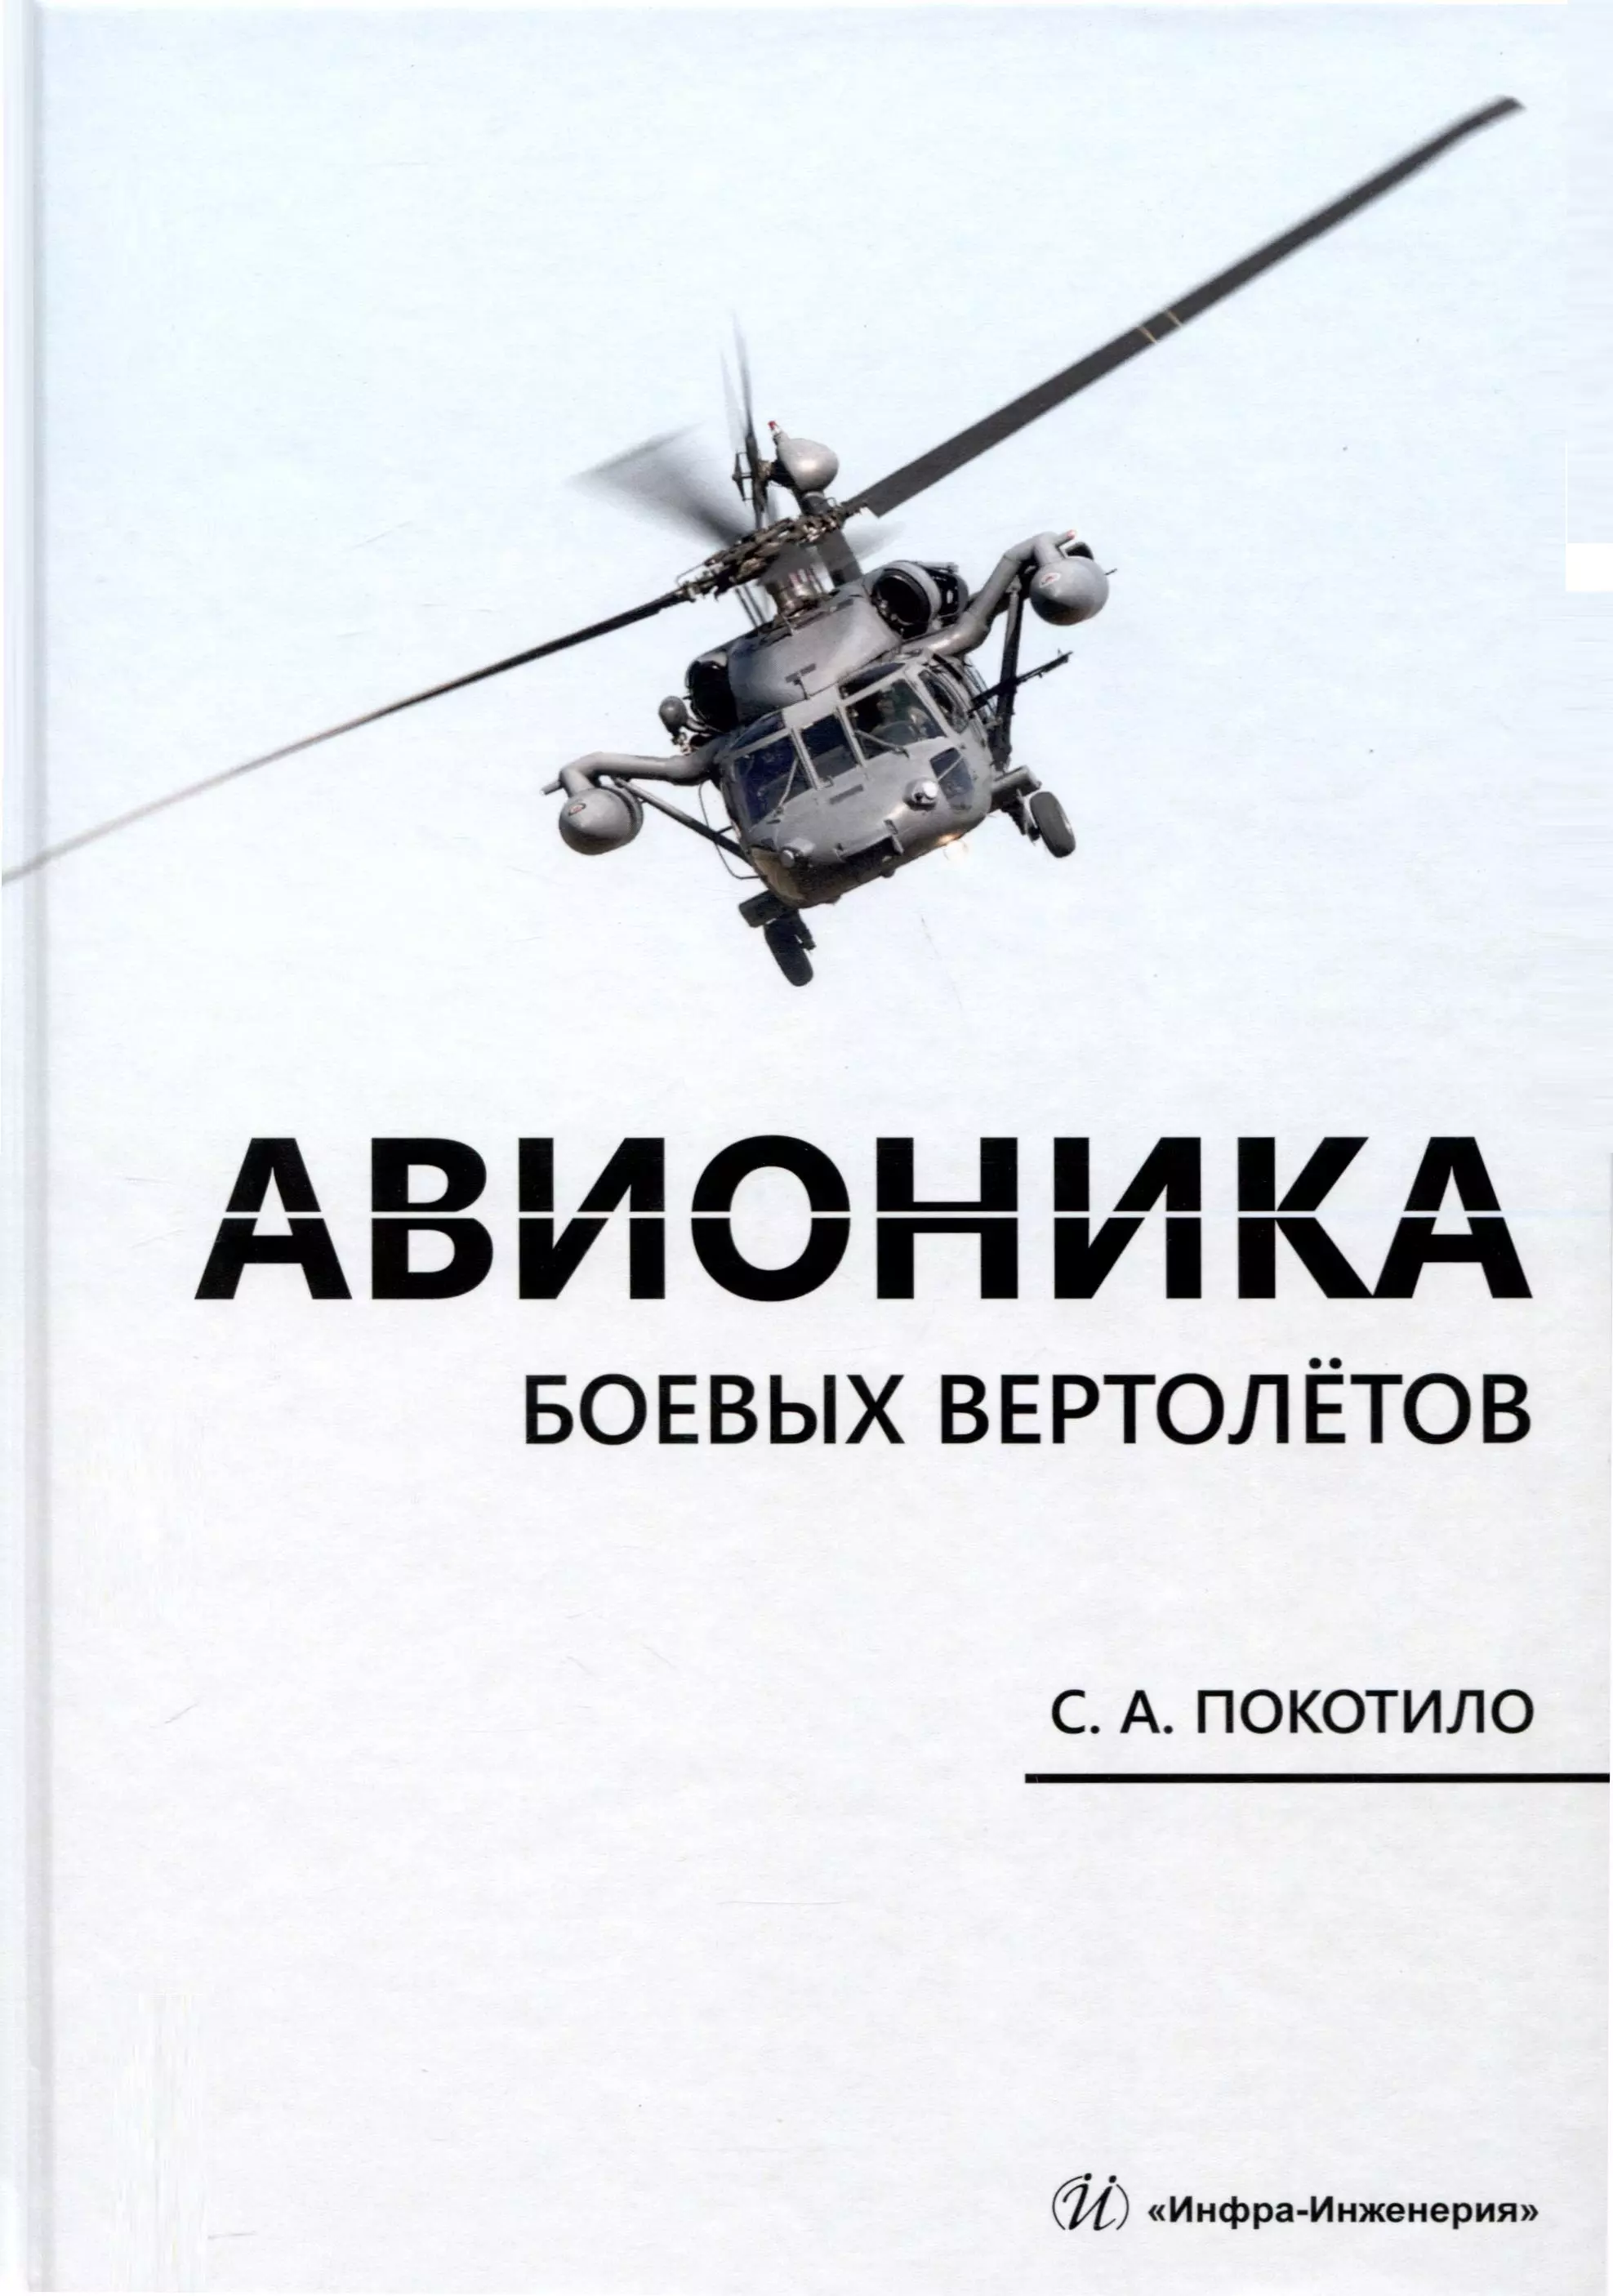 

Авионика боевых вертолетов